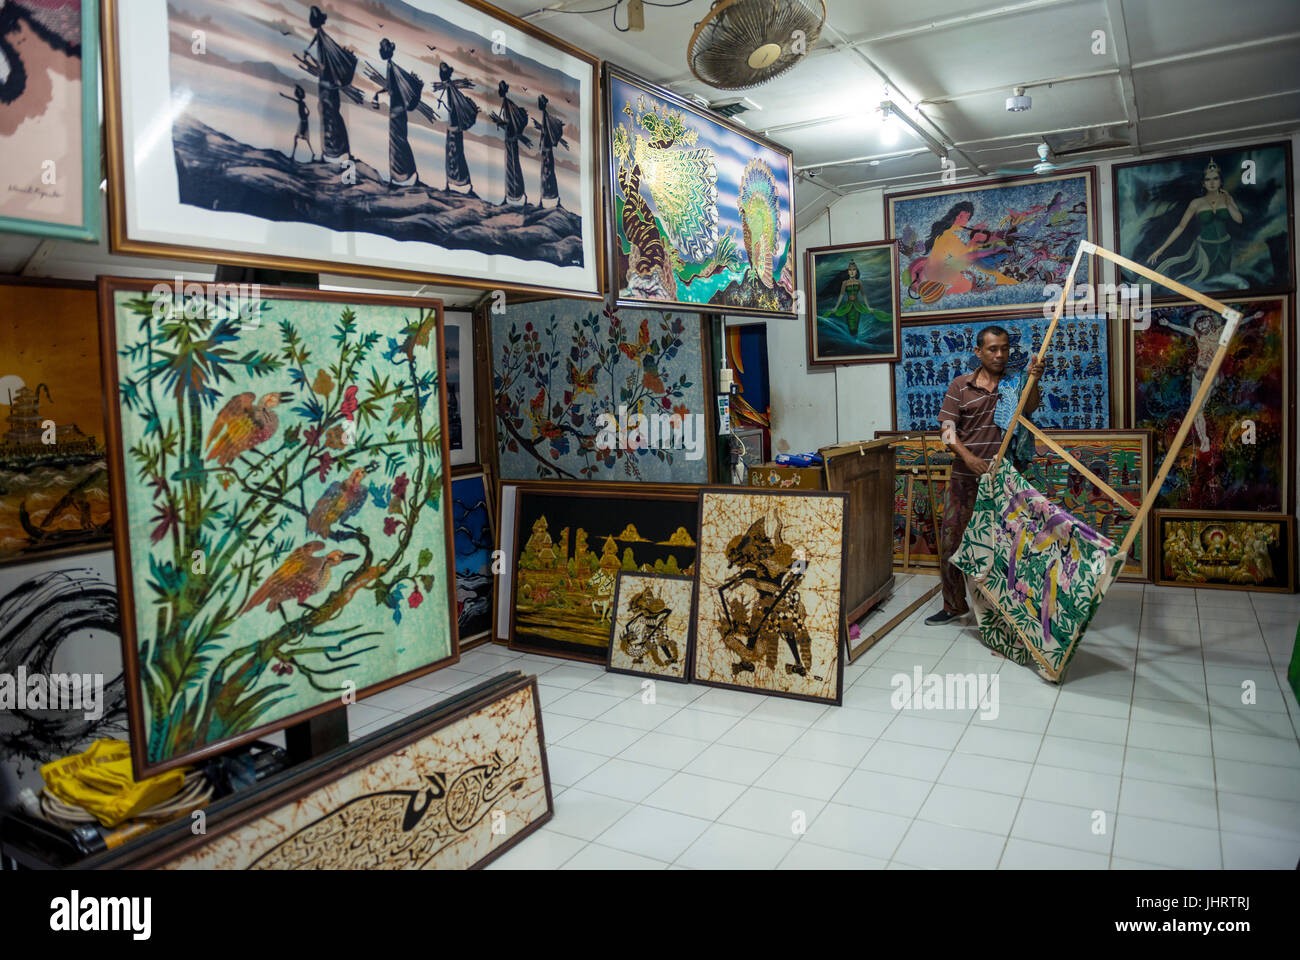 Boutique avec des peintures batik, peinture sur soie, Yogyakarta, Java, Indonésie Banque D'Images